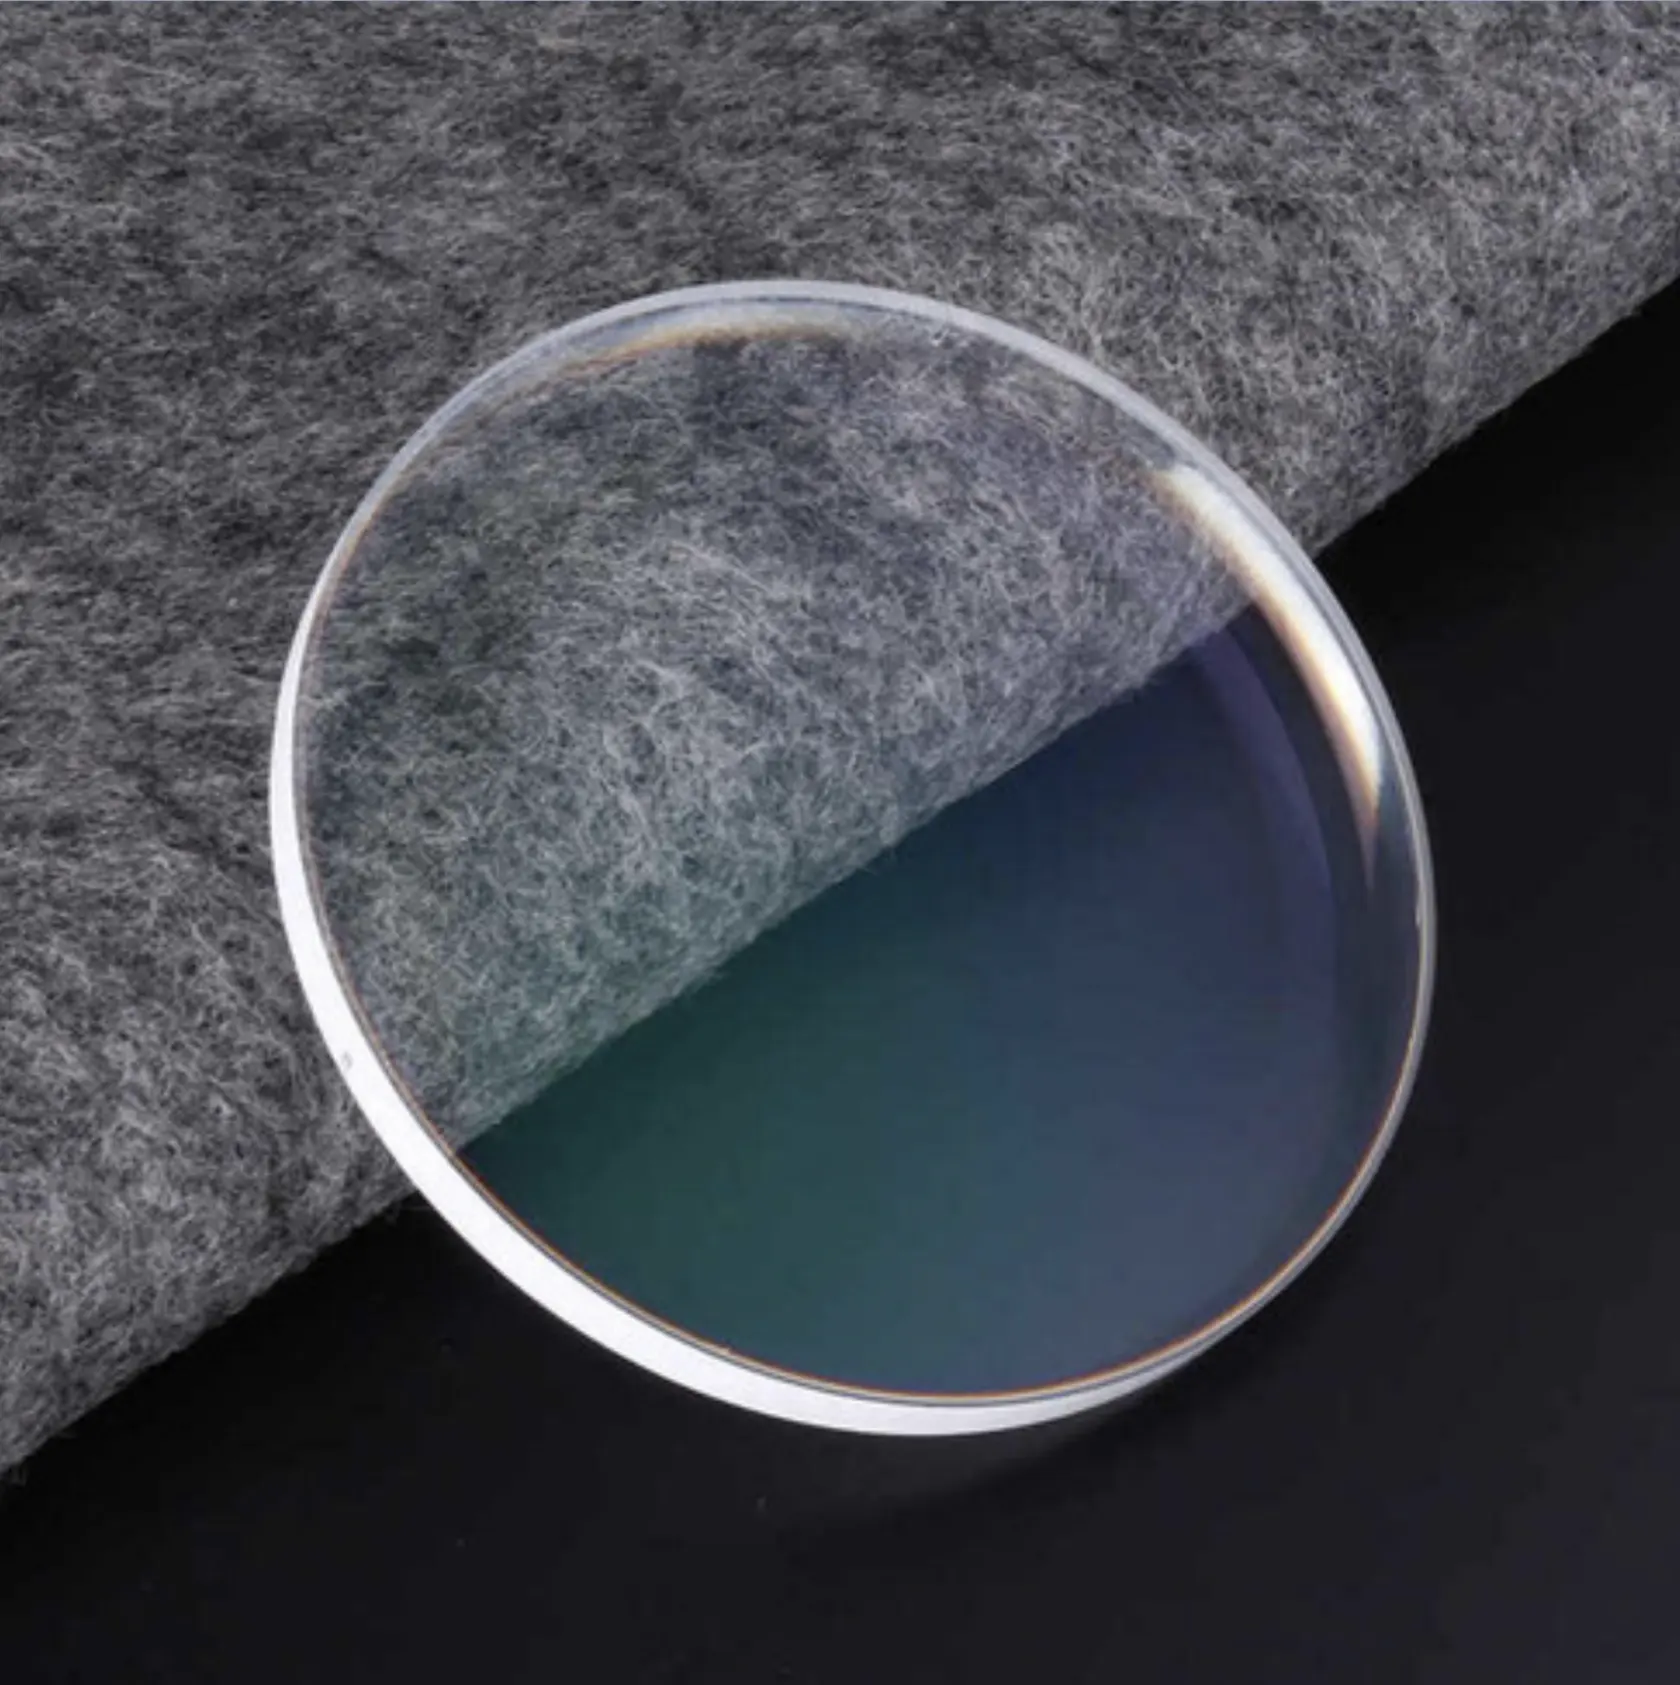 Danyang Beste Optische Lensfabricage 1.59 Blauwgesneden Polycarbonaat Oftalmische Lens Pc Blue Block Bril Lenzen